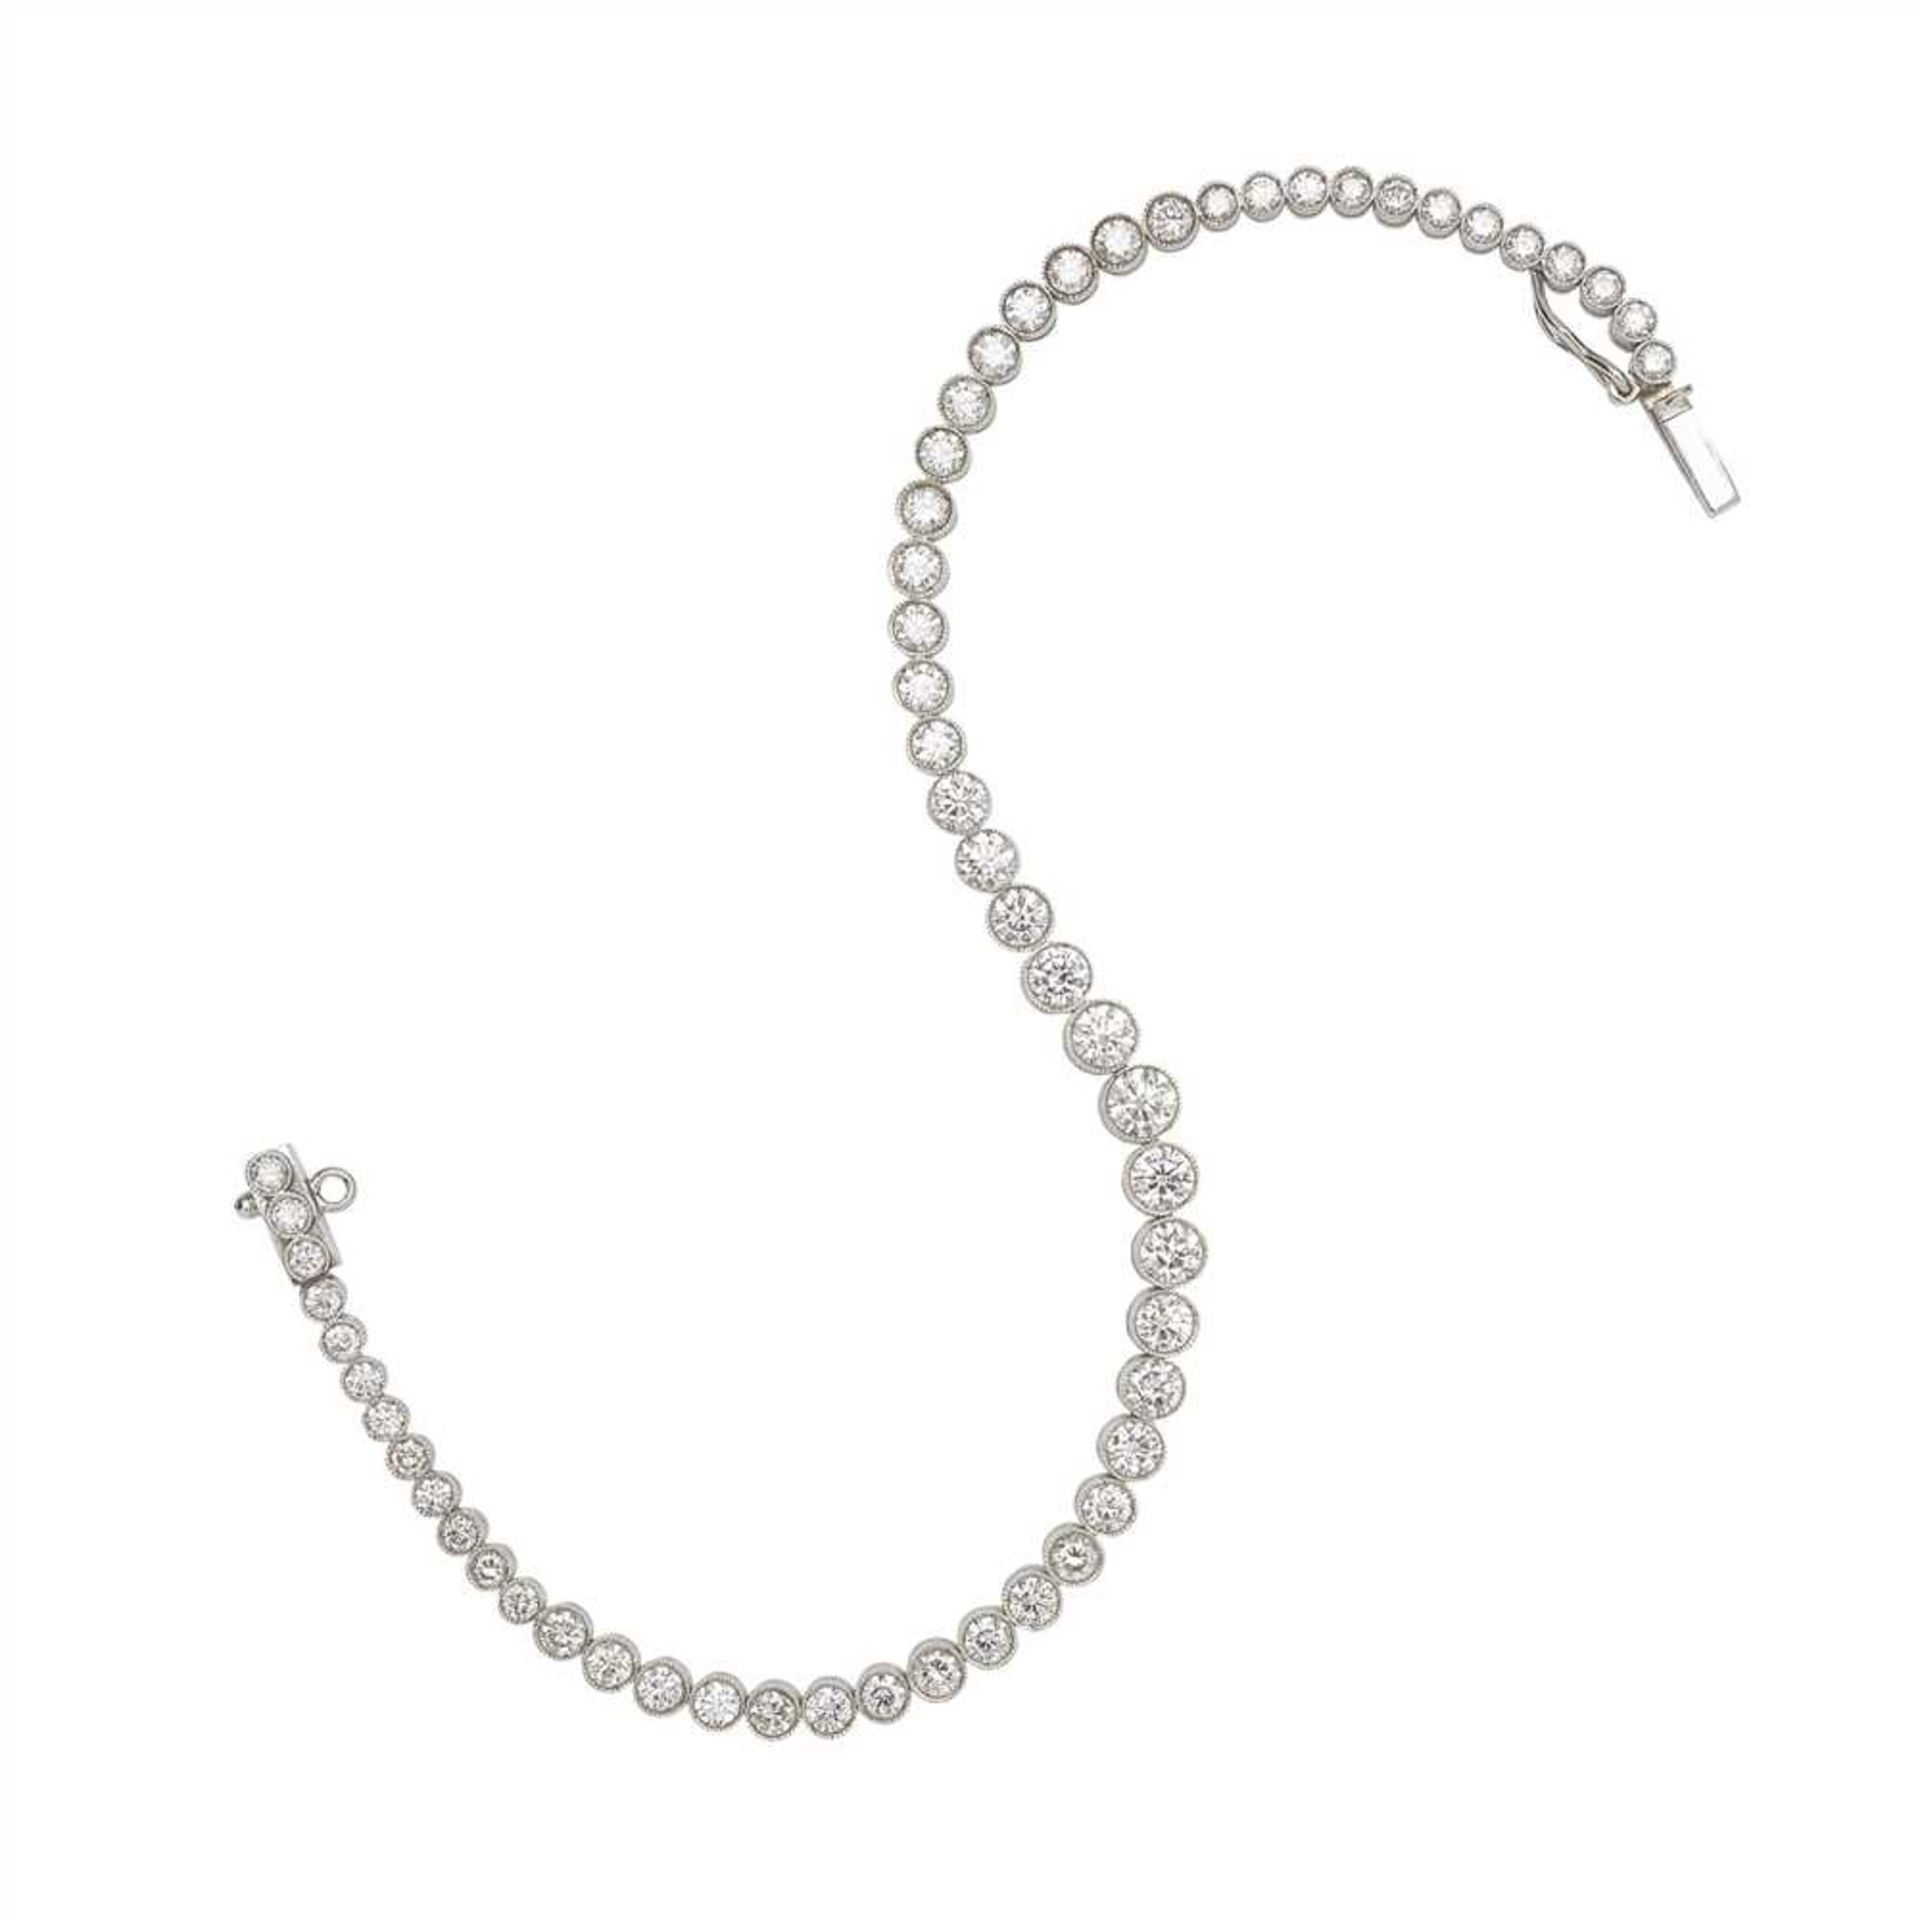 A diamond line bracelet - Image 2 of 2